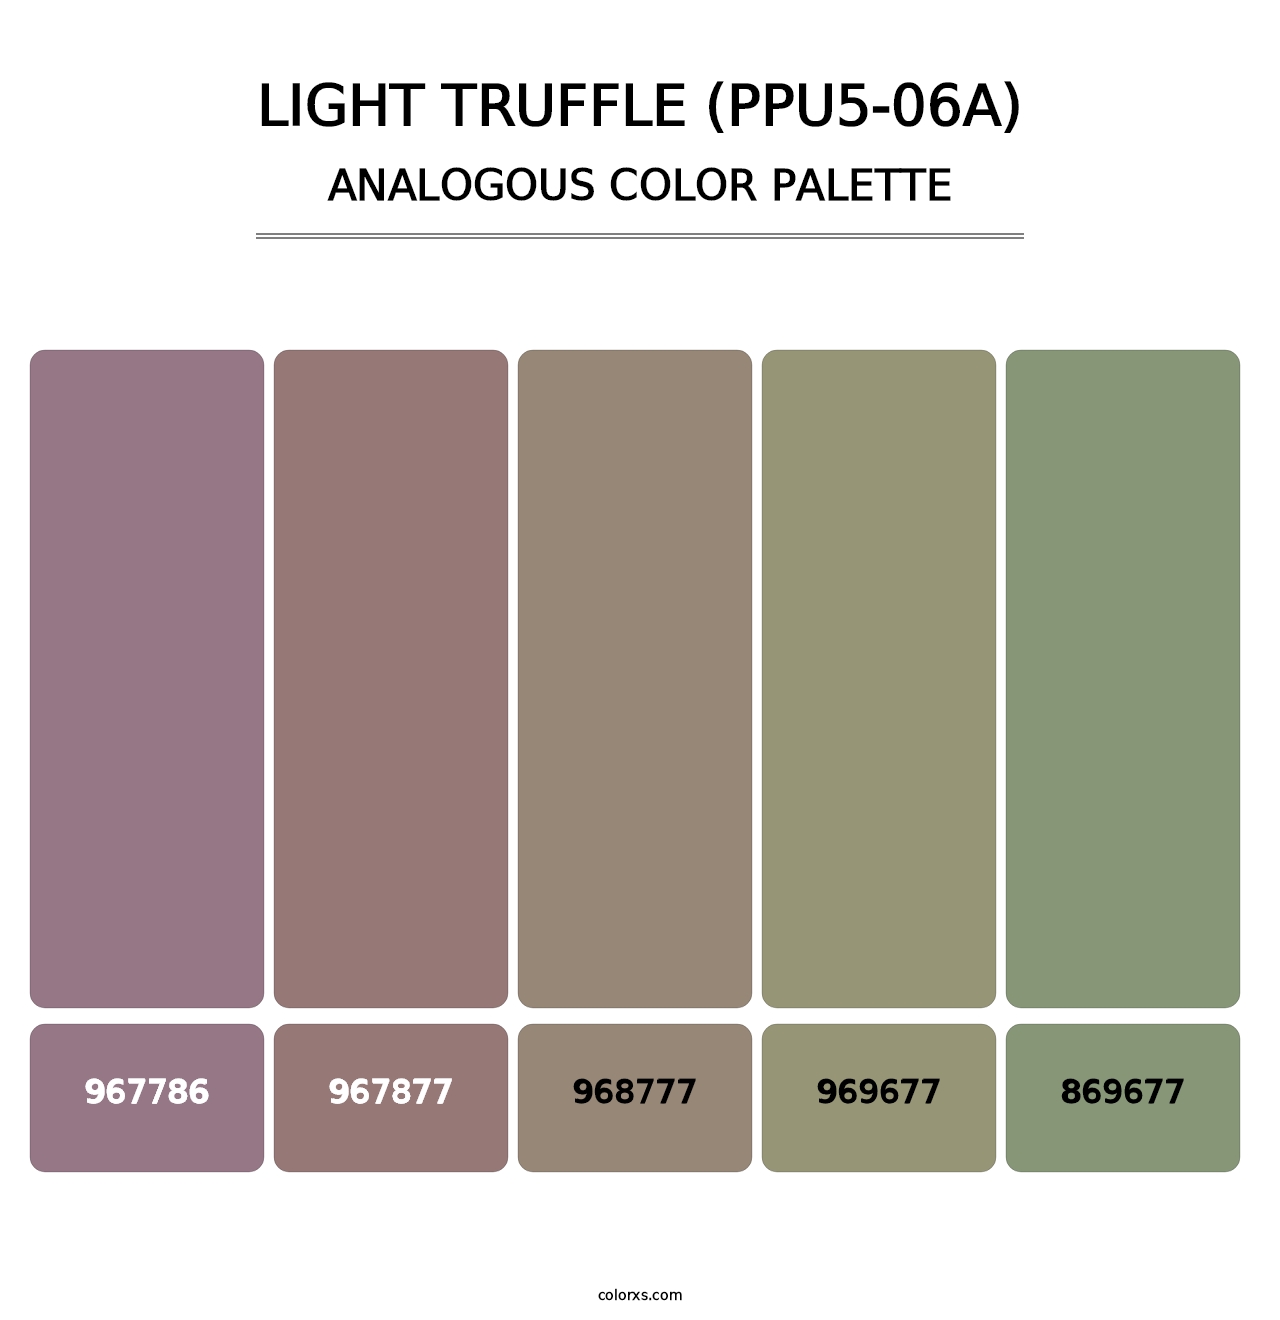 Light Truffle (PPU5-06A) - Analogous Color Palette